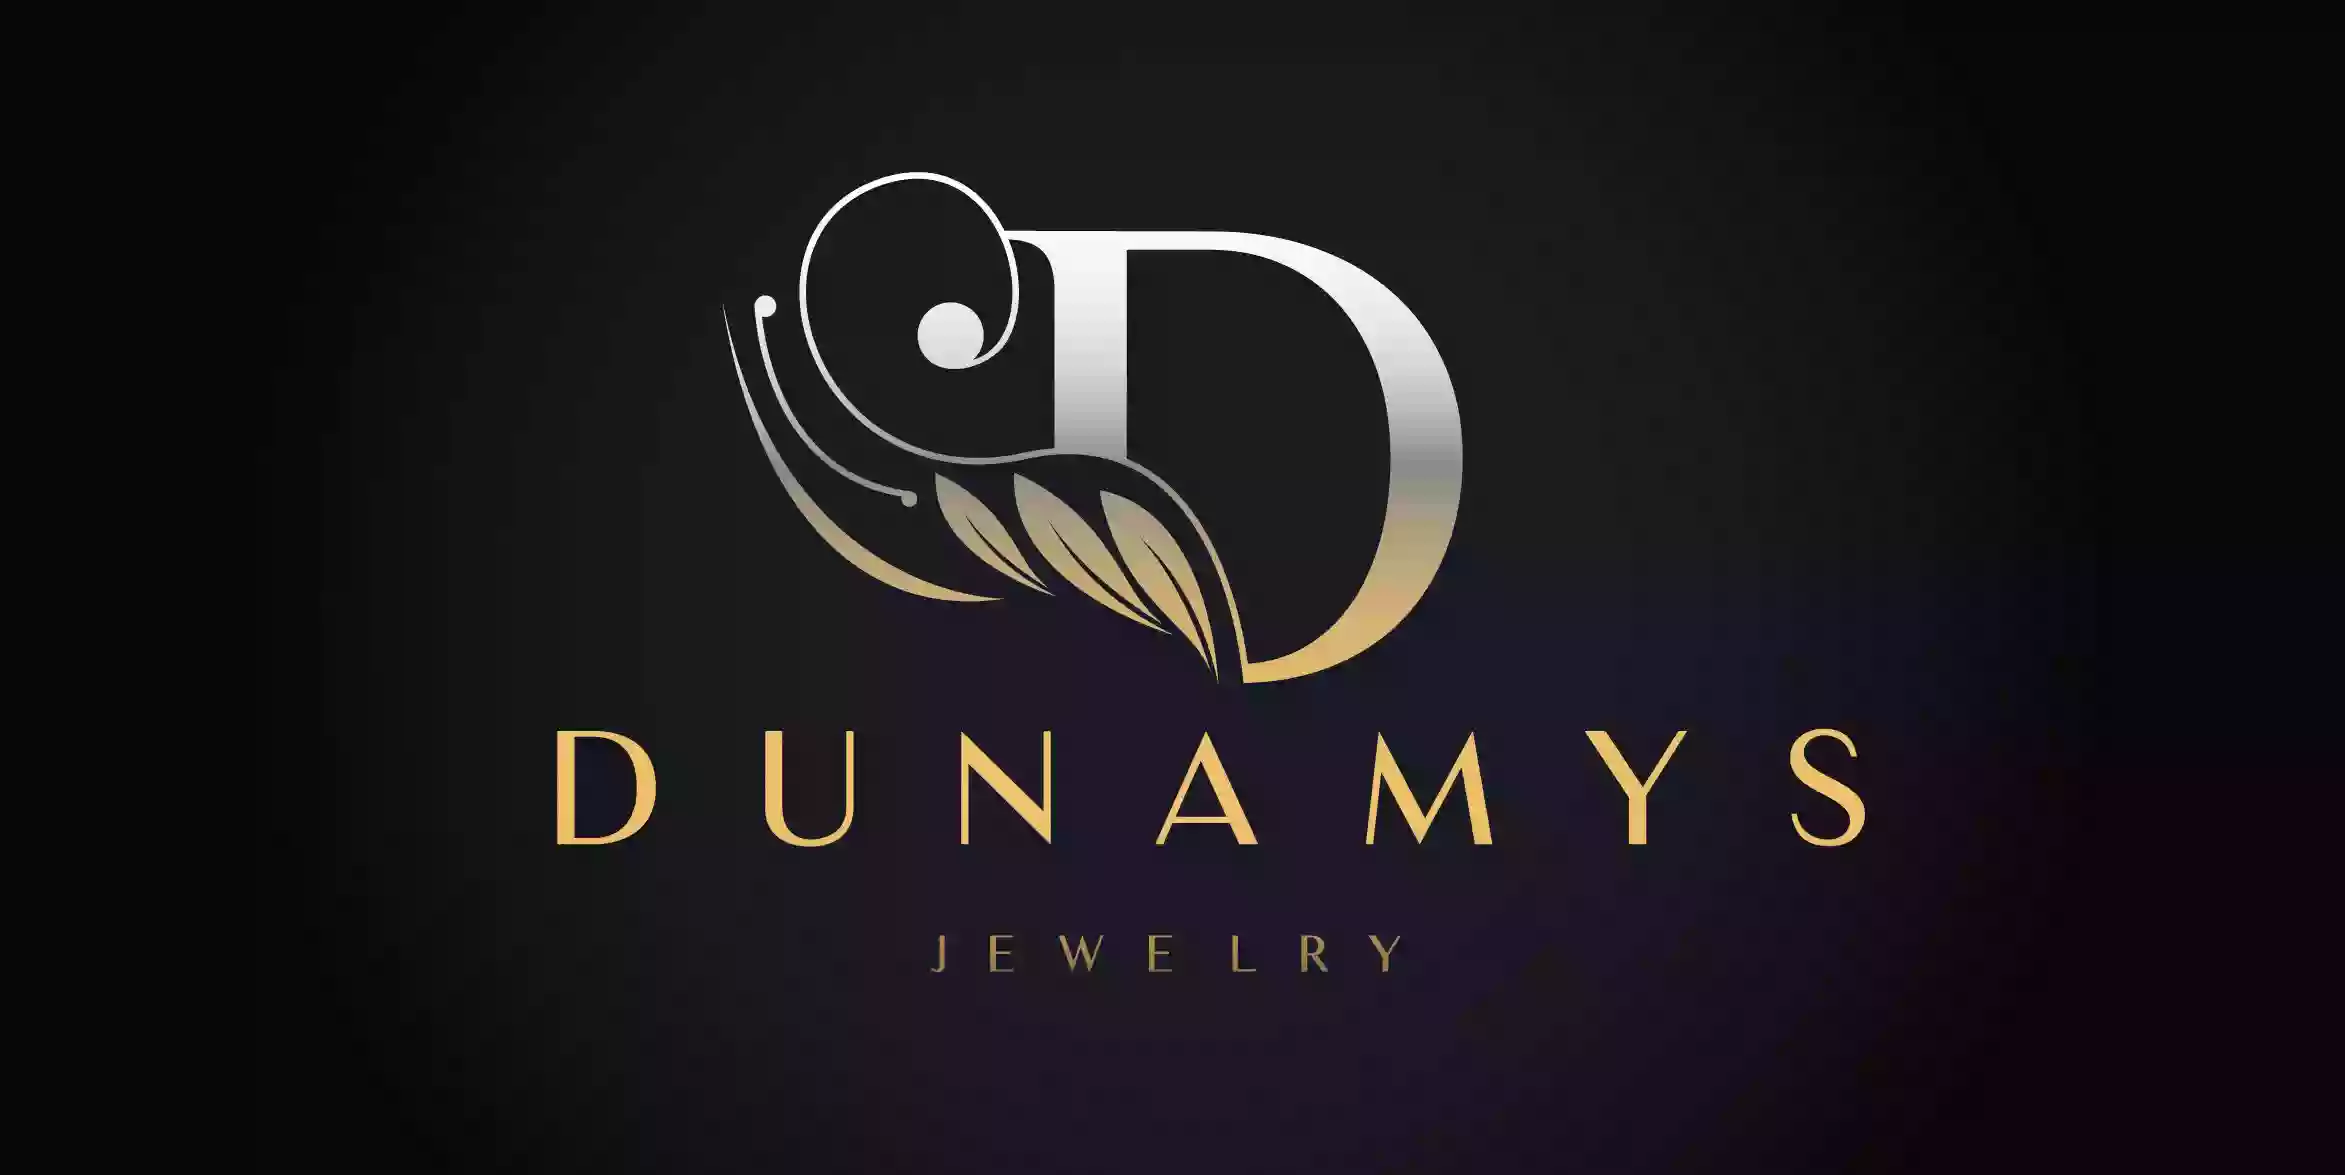 Dunamys Jewelry